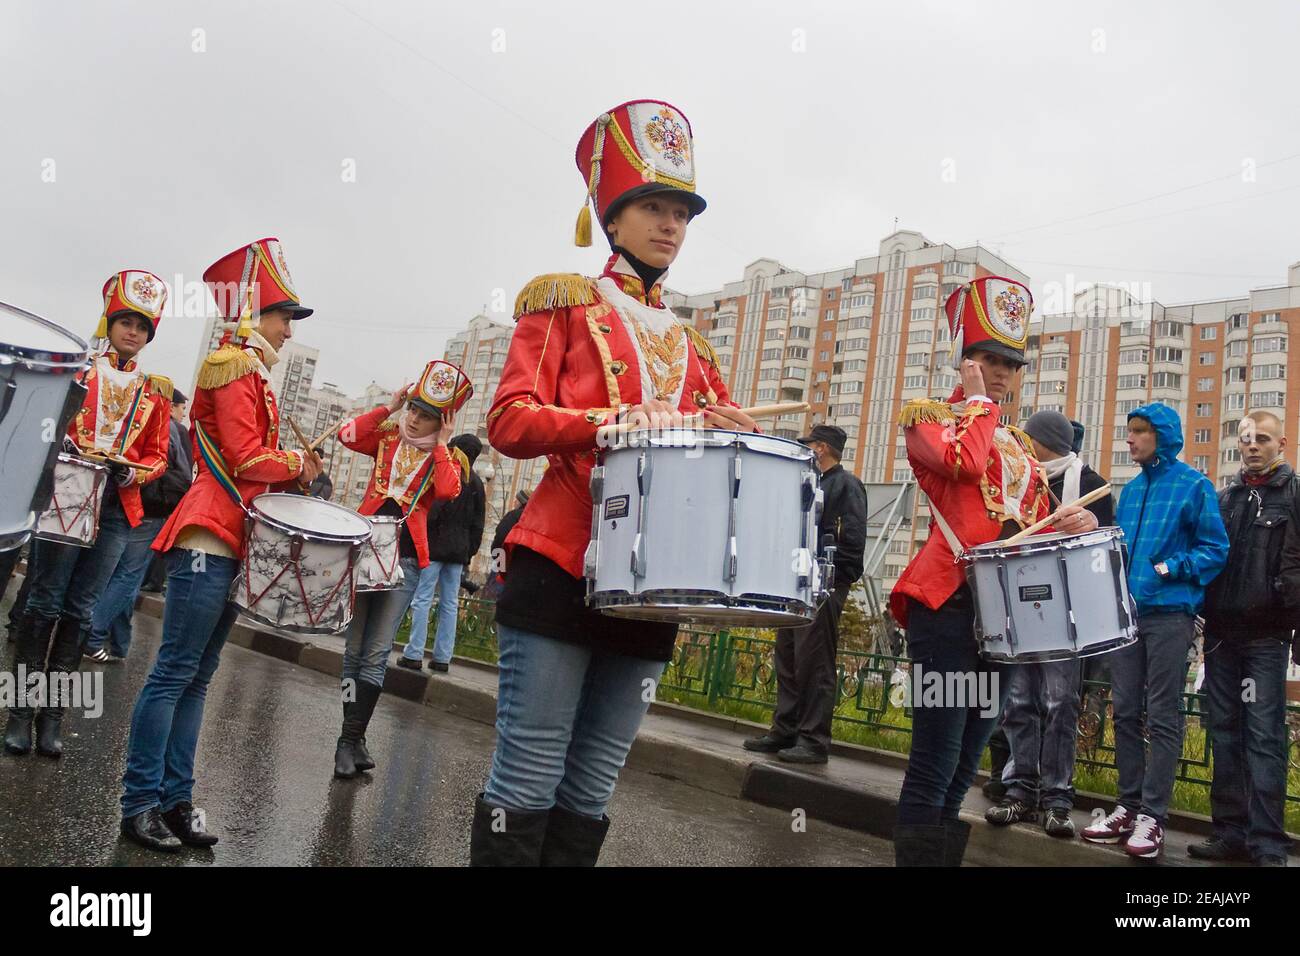 04.11.2010. Russie, Moscou : marche annuelle des nationalistes russes à Moscou (marche russe). Les filles de batteur de l'ensemble Moskvichki. Banque D'Images